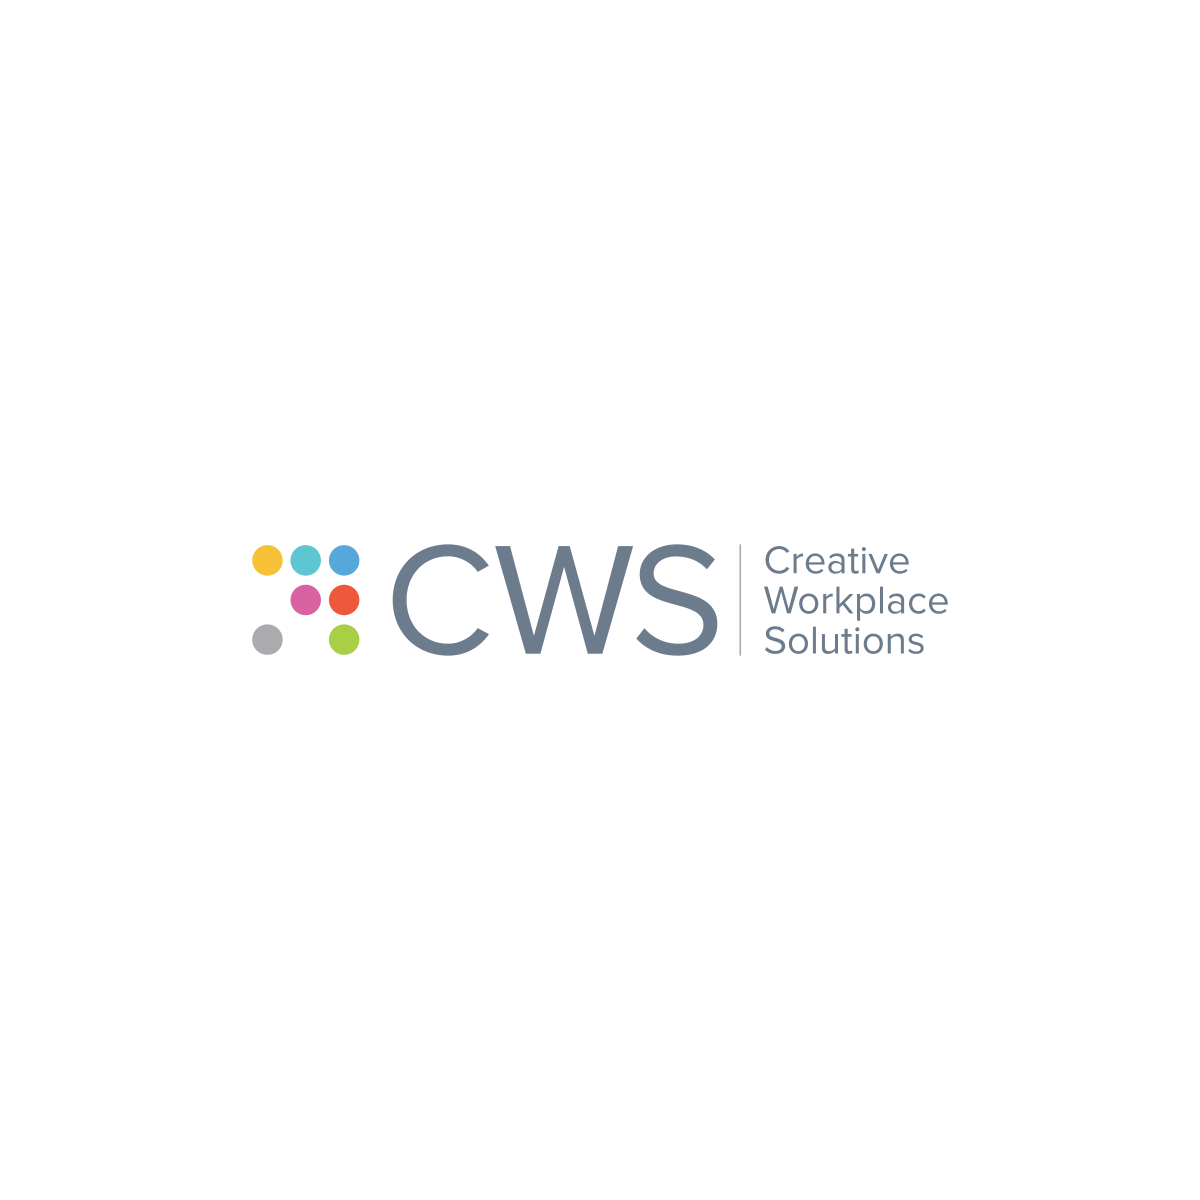 创意工作场所解决方案(CWS)标志